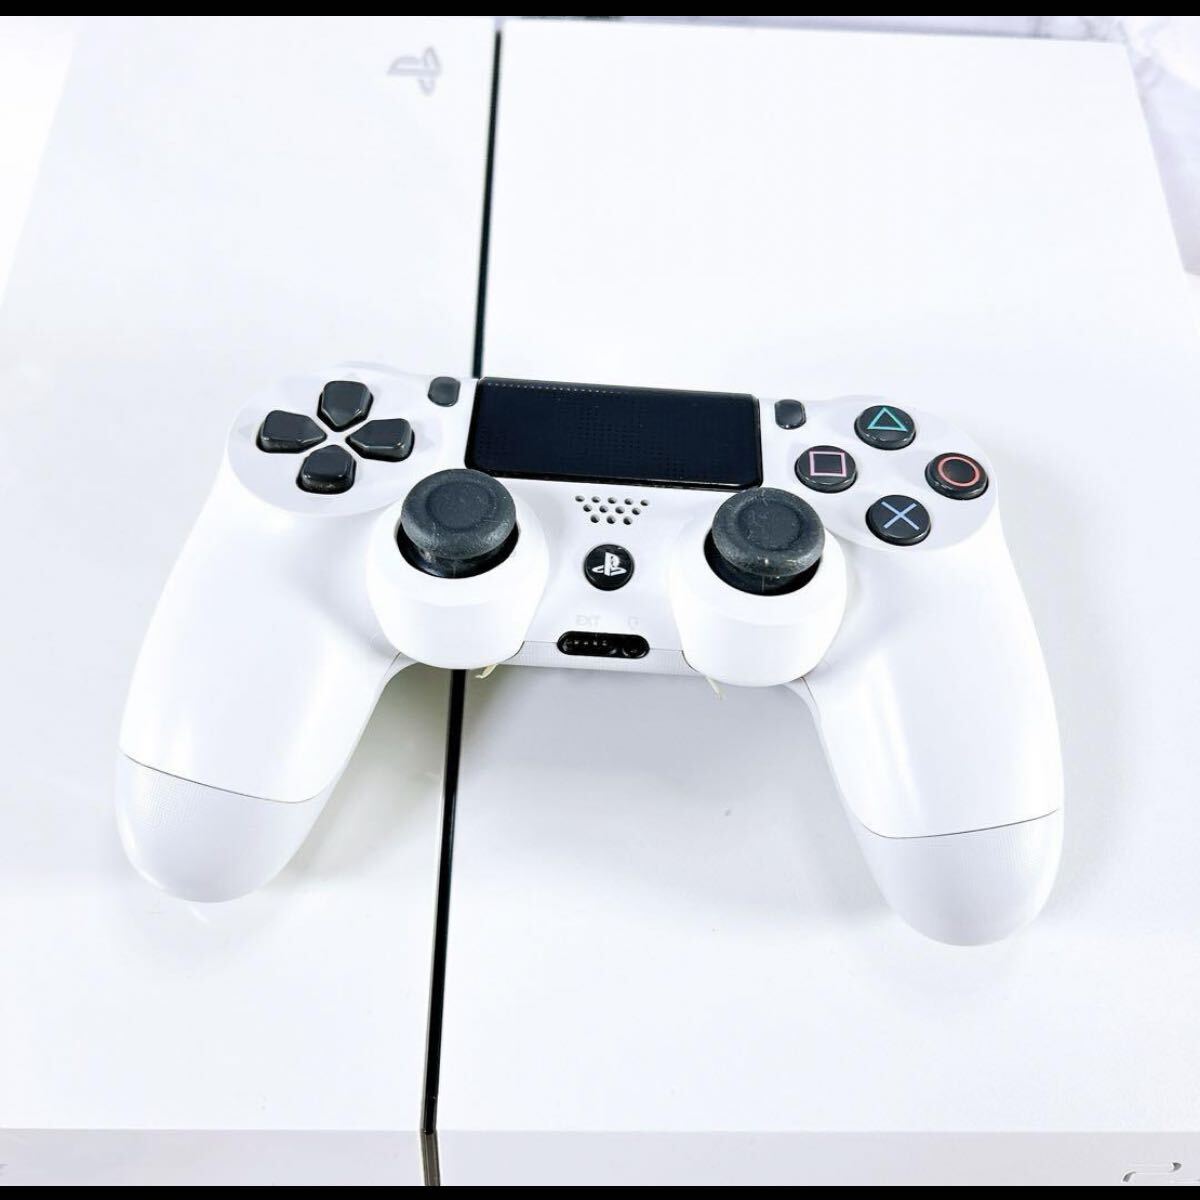 動作確認済み SONY PlayStation4 CUH-1100A ホワイト hdmiケーブル コンセント コントローラー 付属